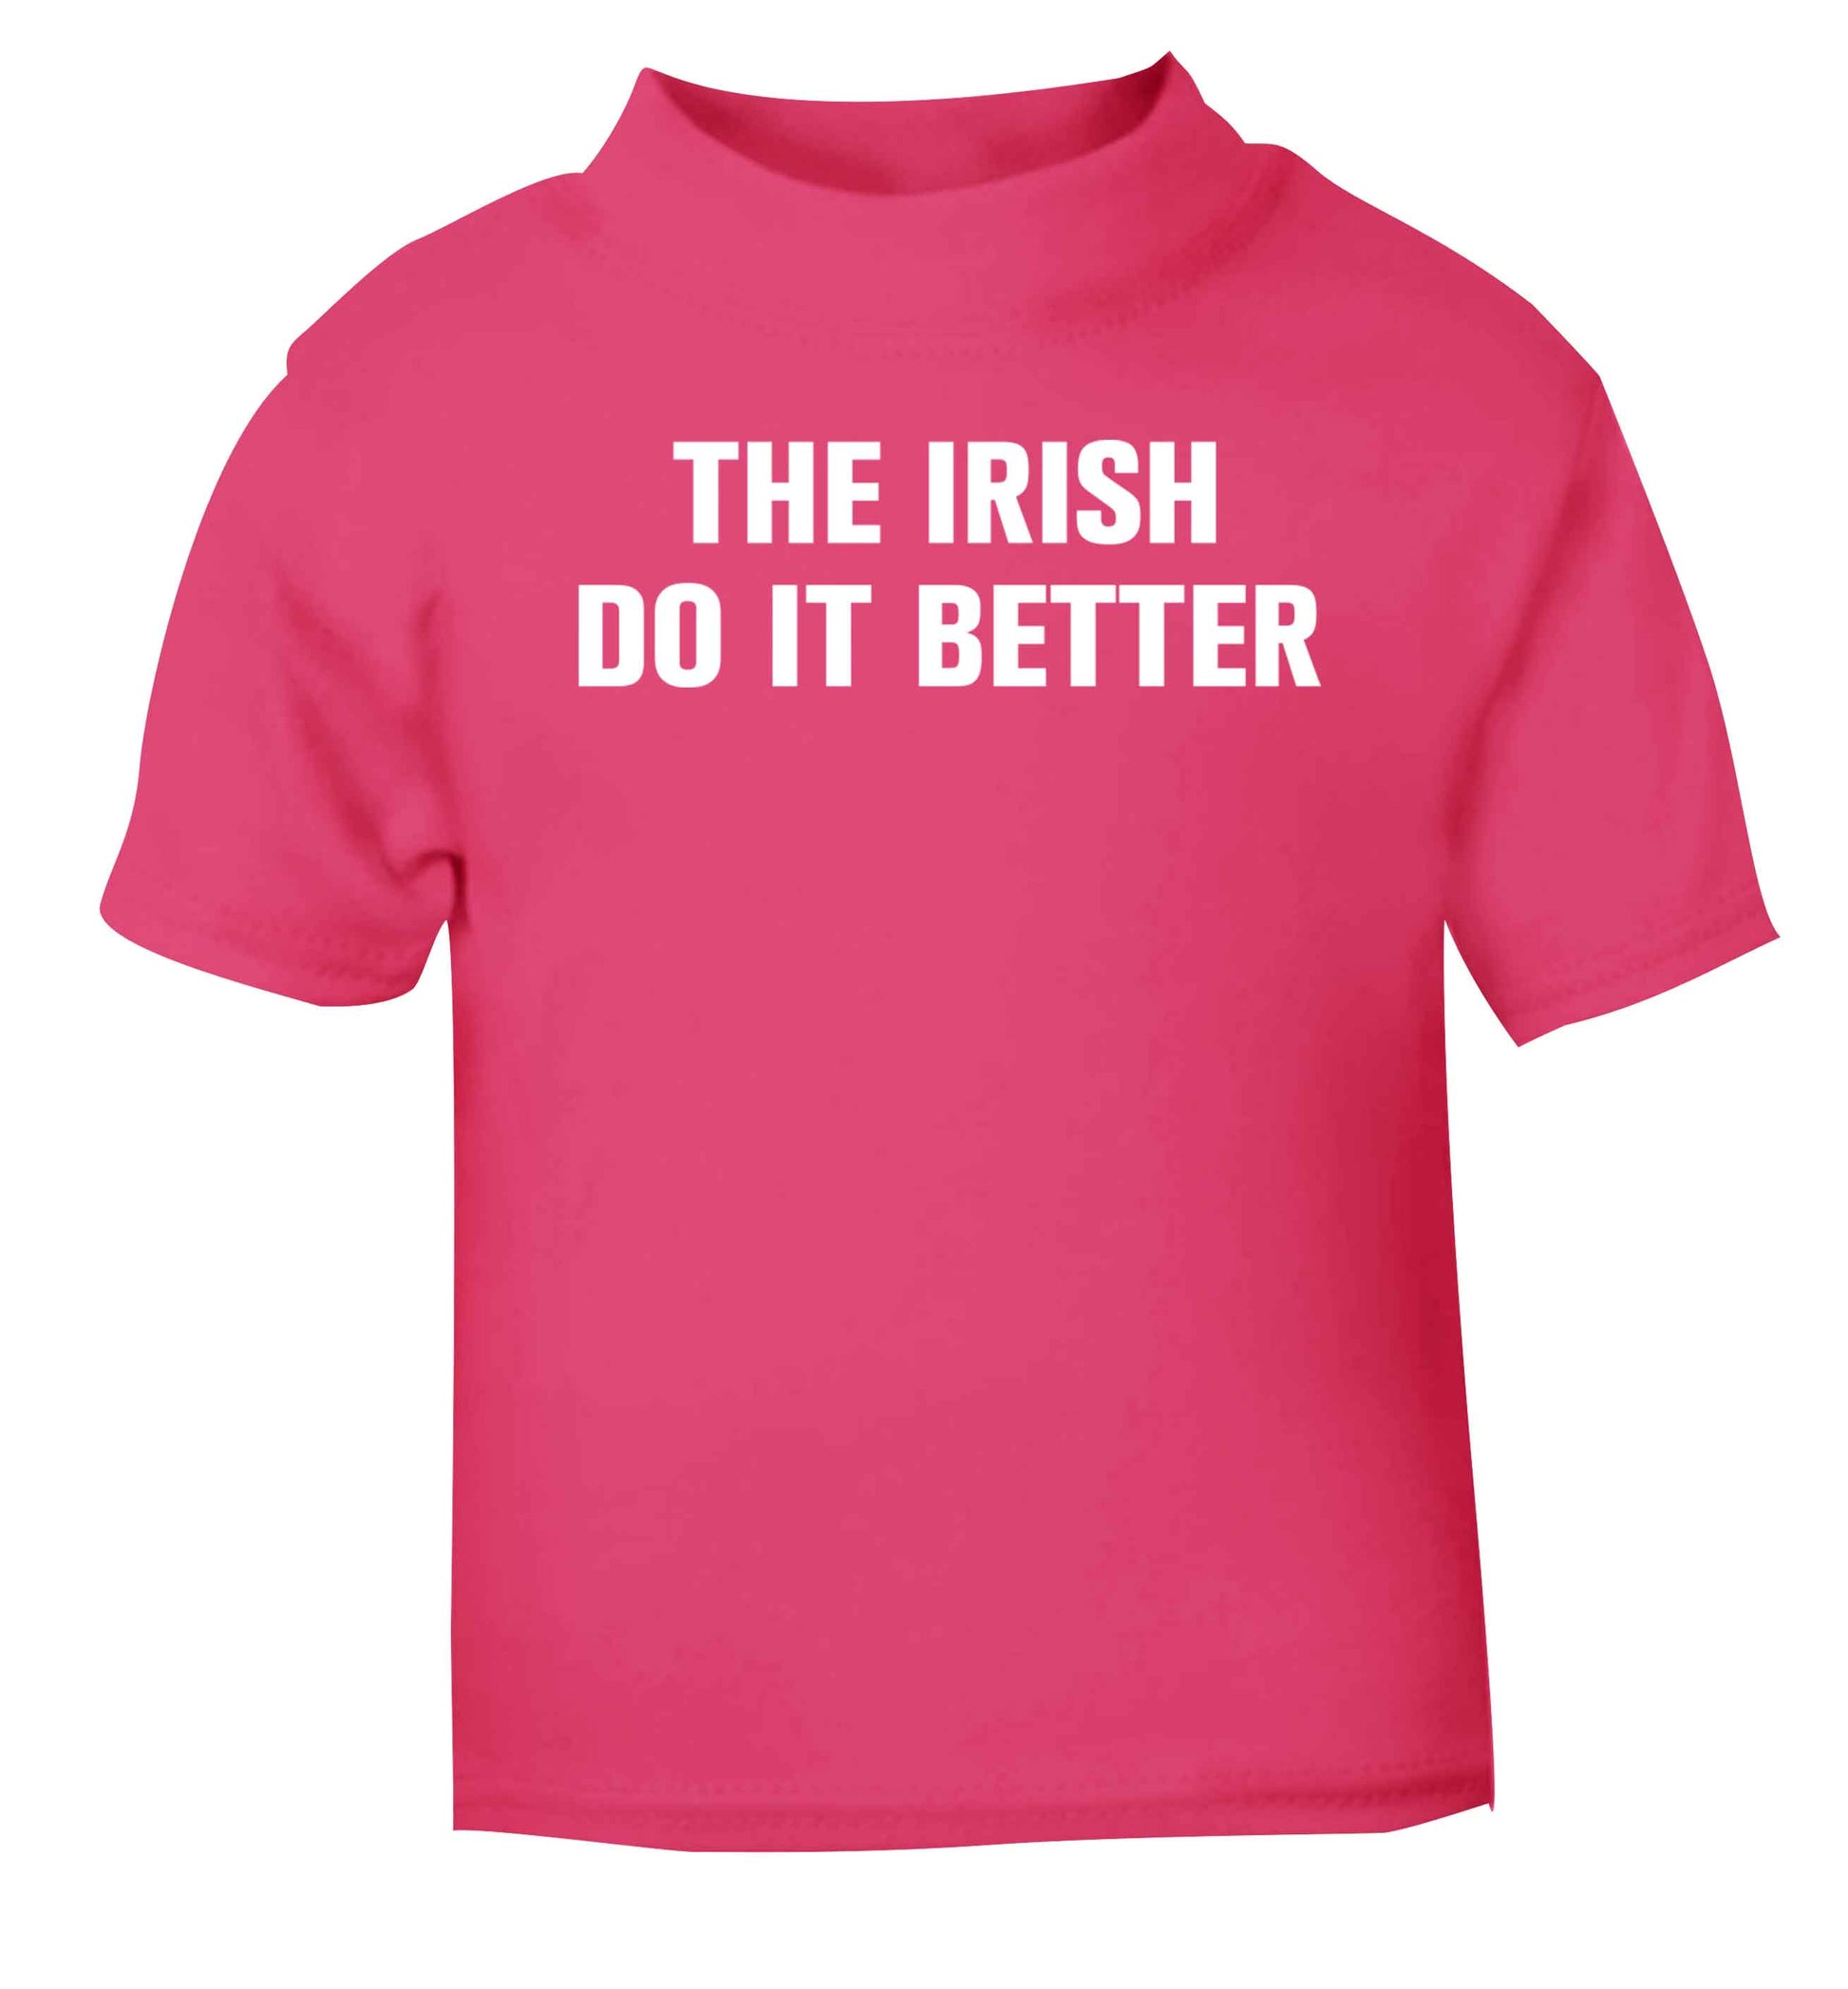 The Irish do it better pink baby toddler Tshirt 2 Years